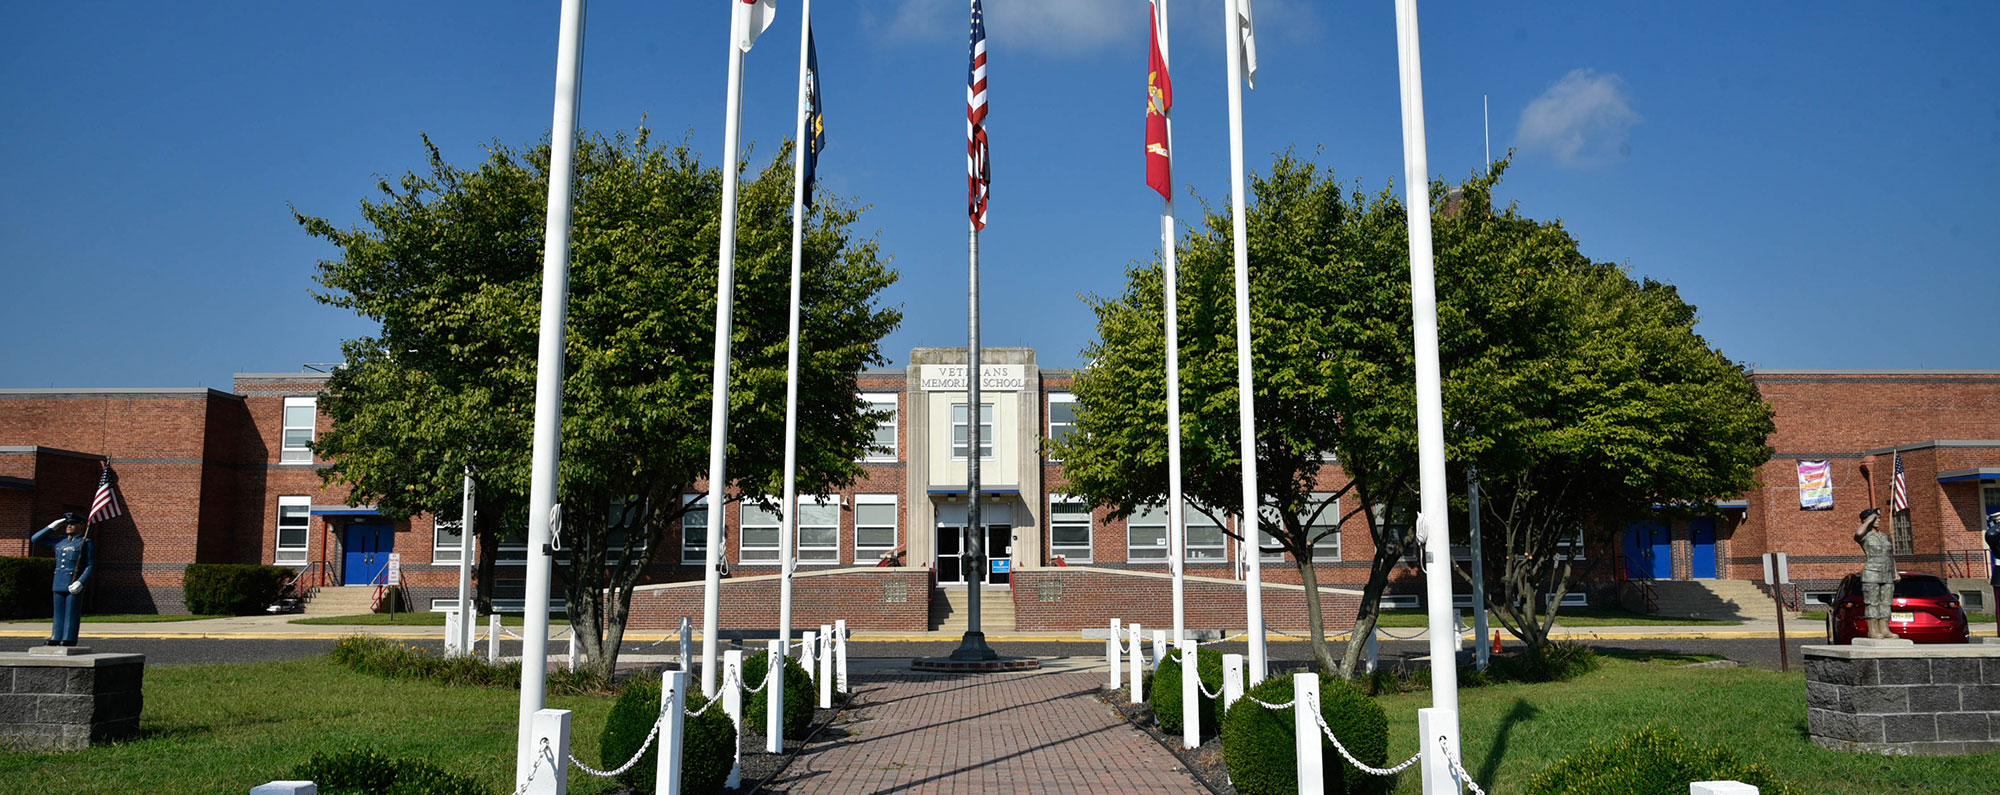 memorial school front